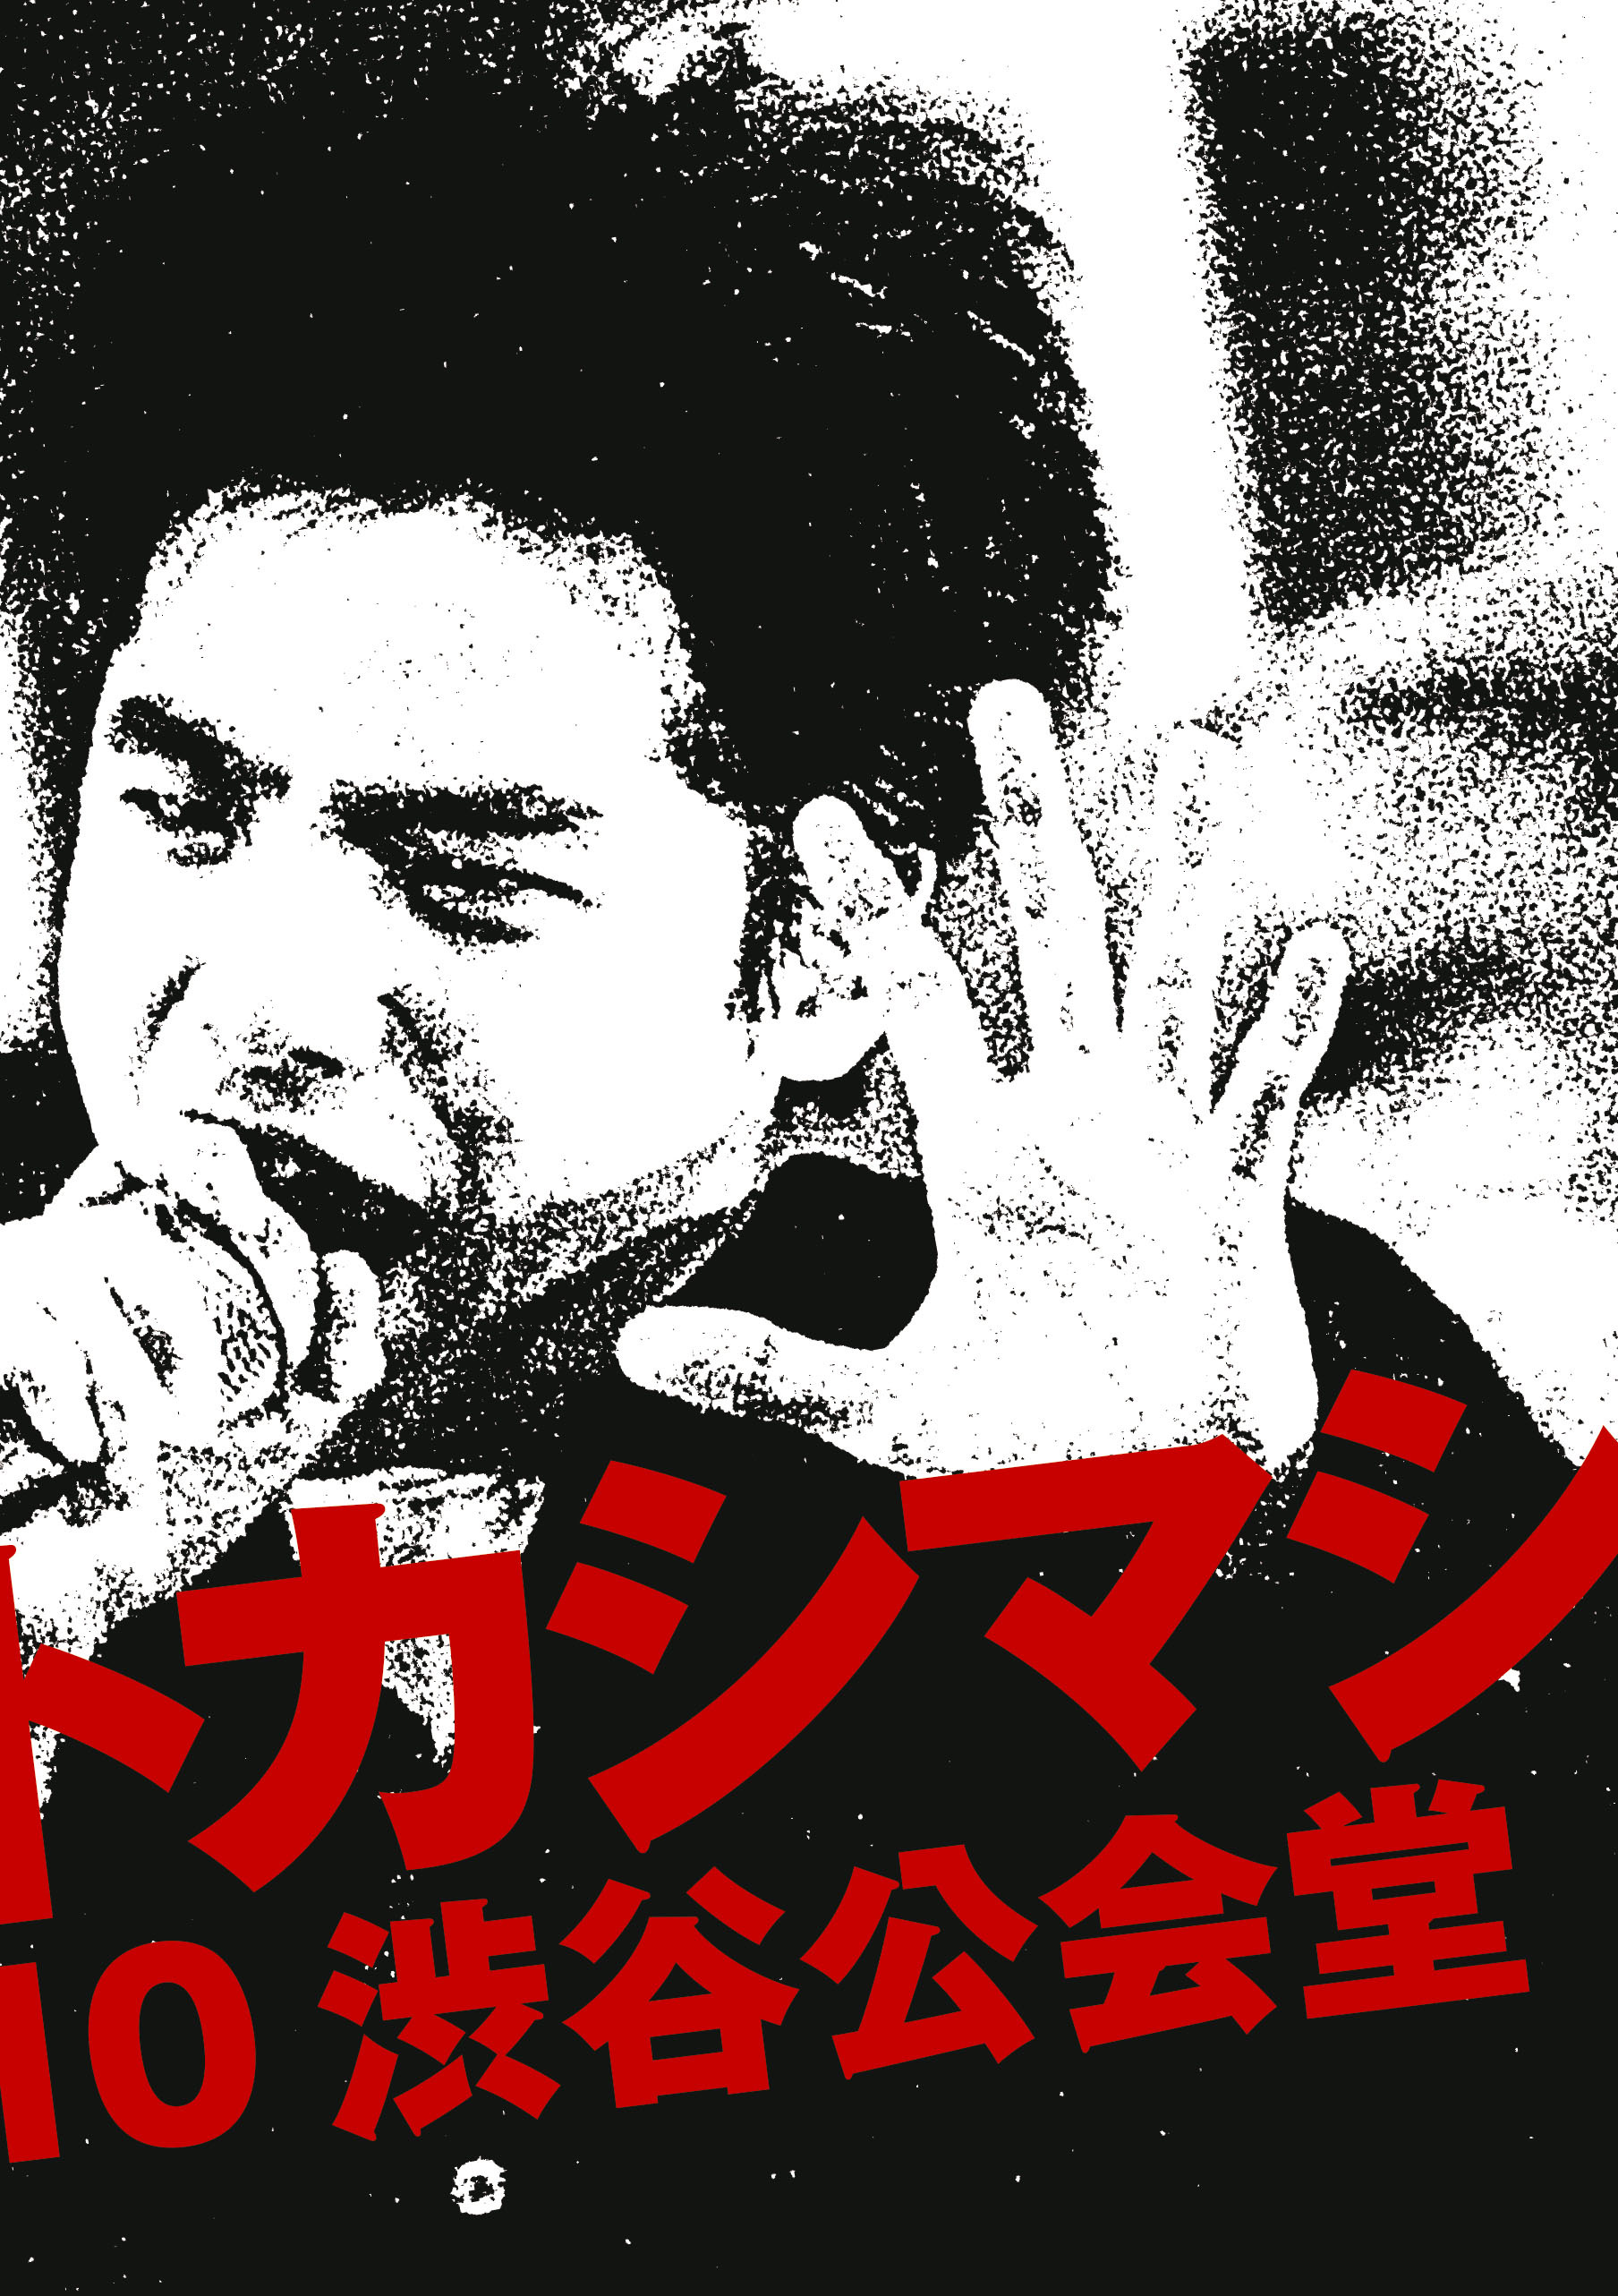 エレファントカシマシ『LIVE FILM エレファントカシマシ 1988/09/10渋谷公会堂』